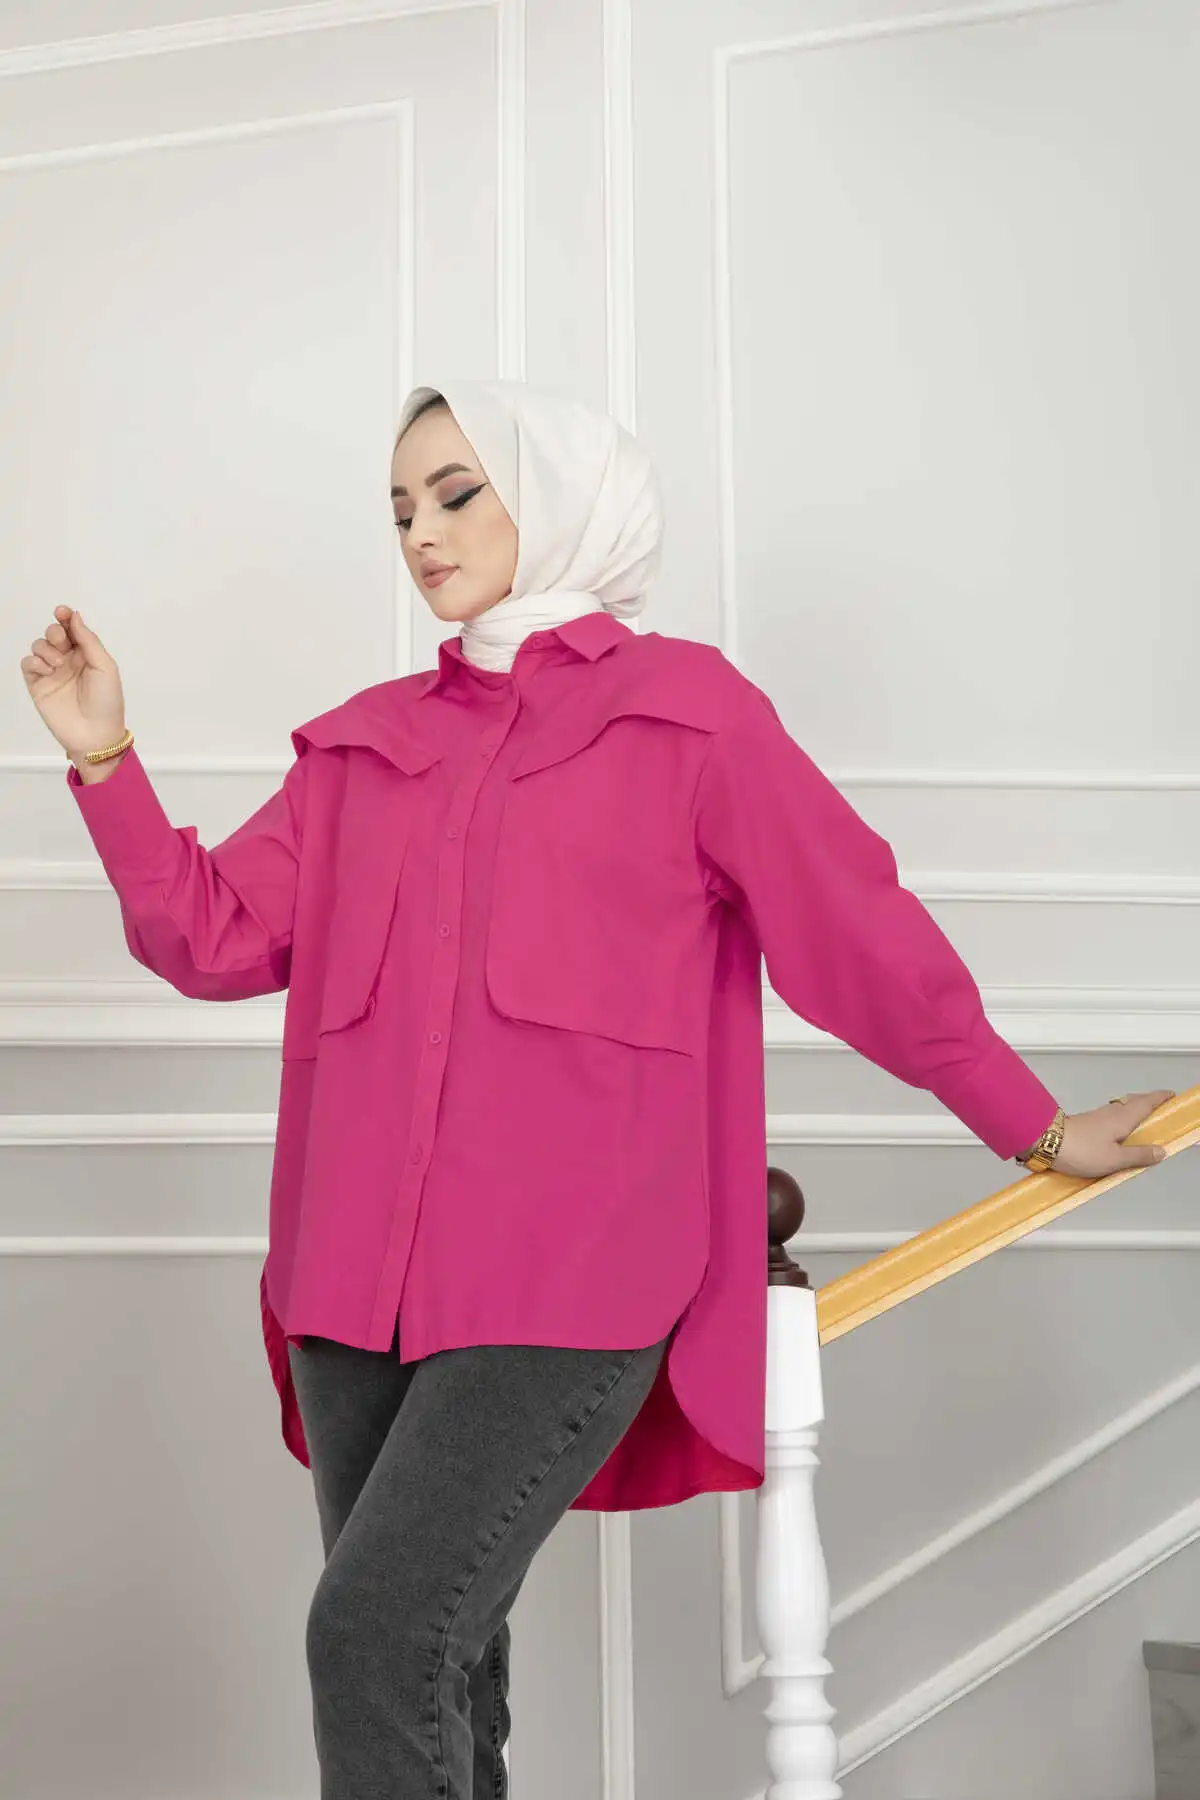 Женская рубашка-хиджаб большого размера с карманами Рамадан ИД скромные платья для женщин индейка Кафтан Исламская одежда абайя Дубай мусу...